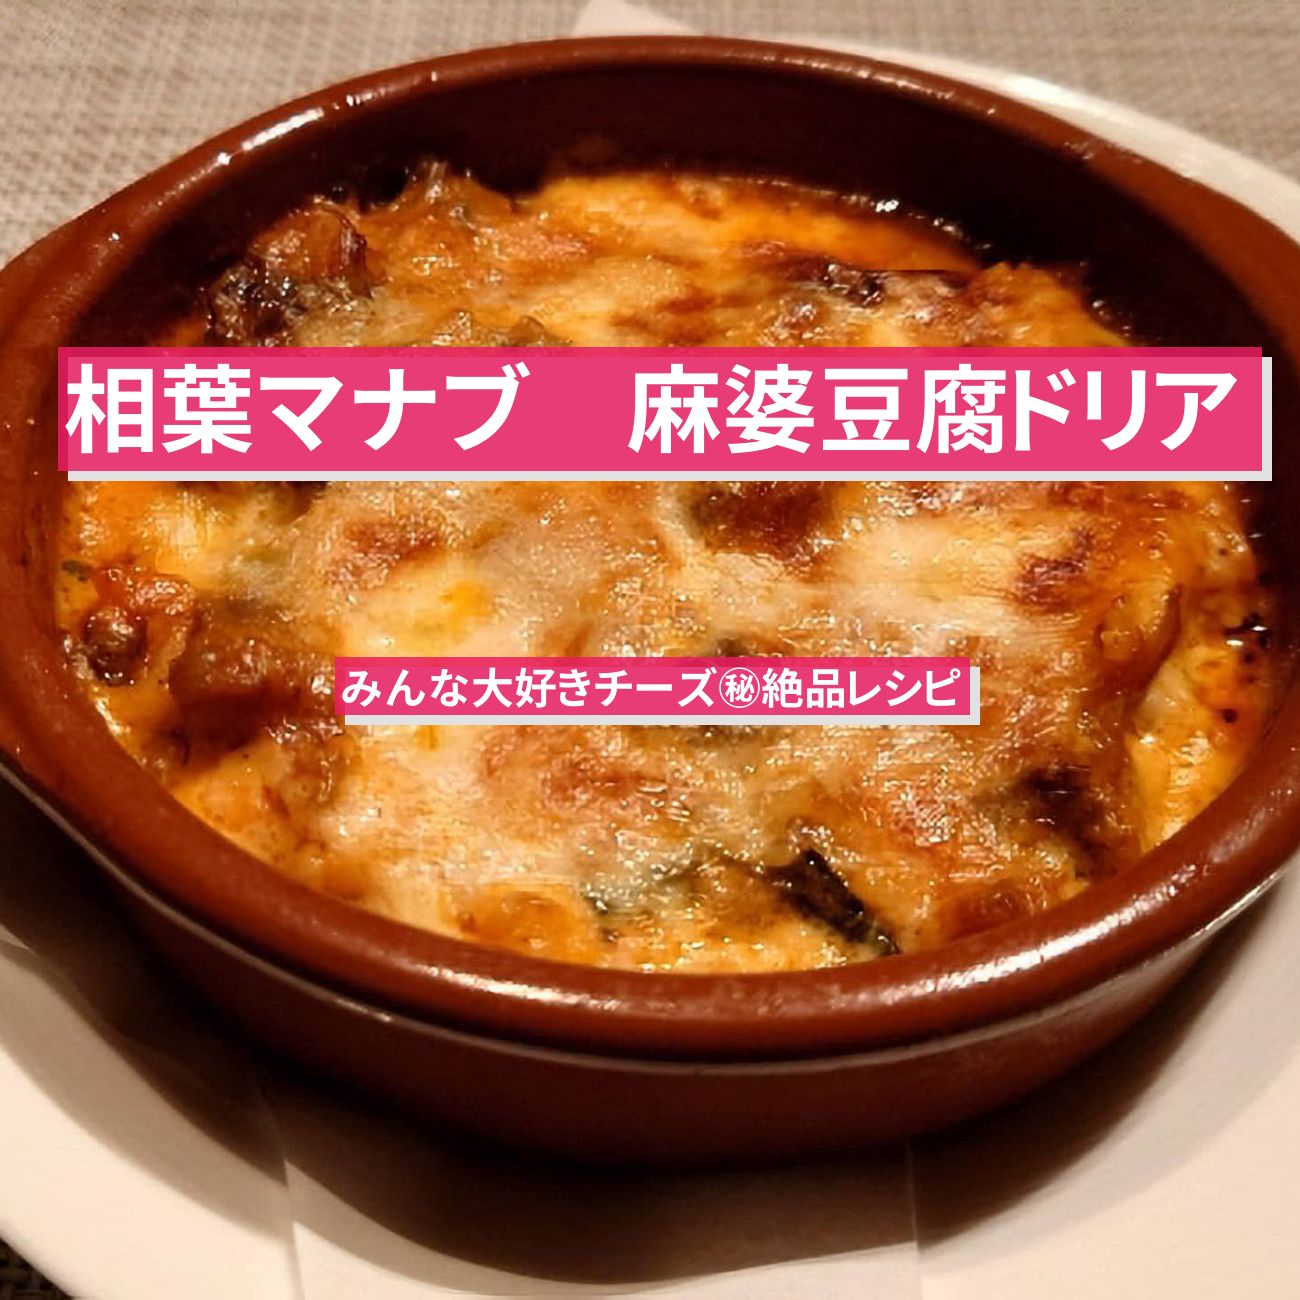 【相葉マナブ】『麻婆豆腐ドリア』美虎・五十嵐美幸シェフのレシピ・作り方